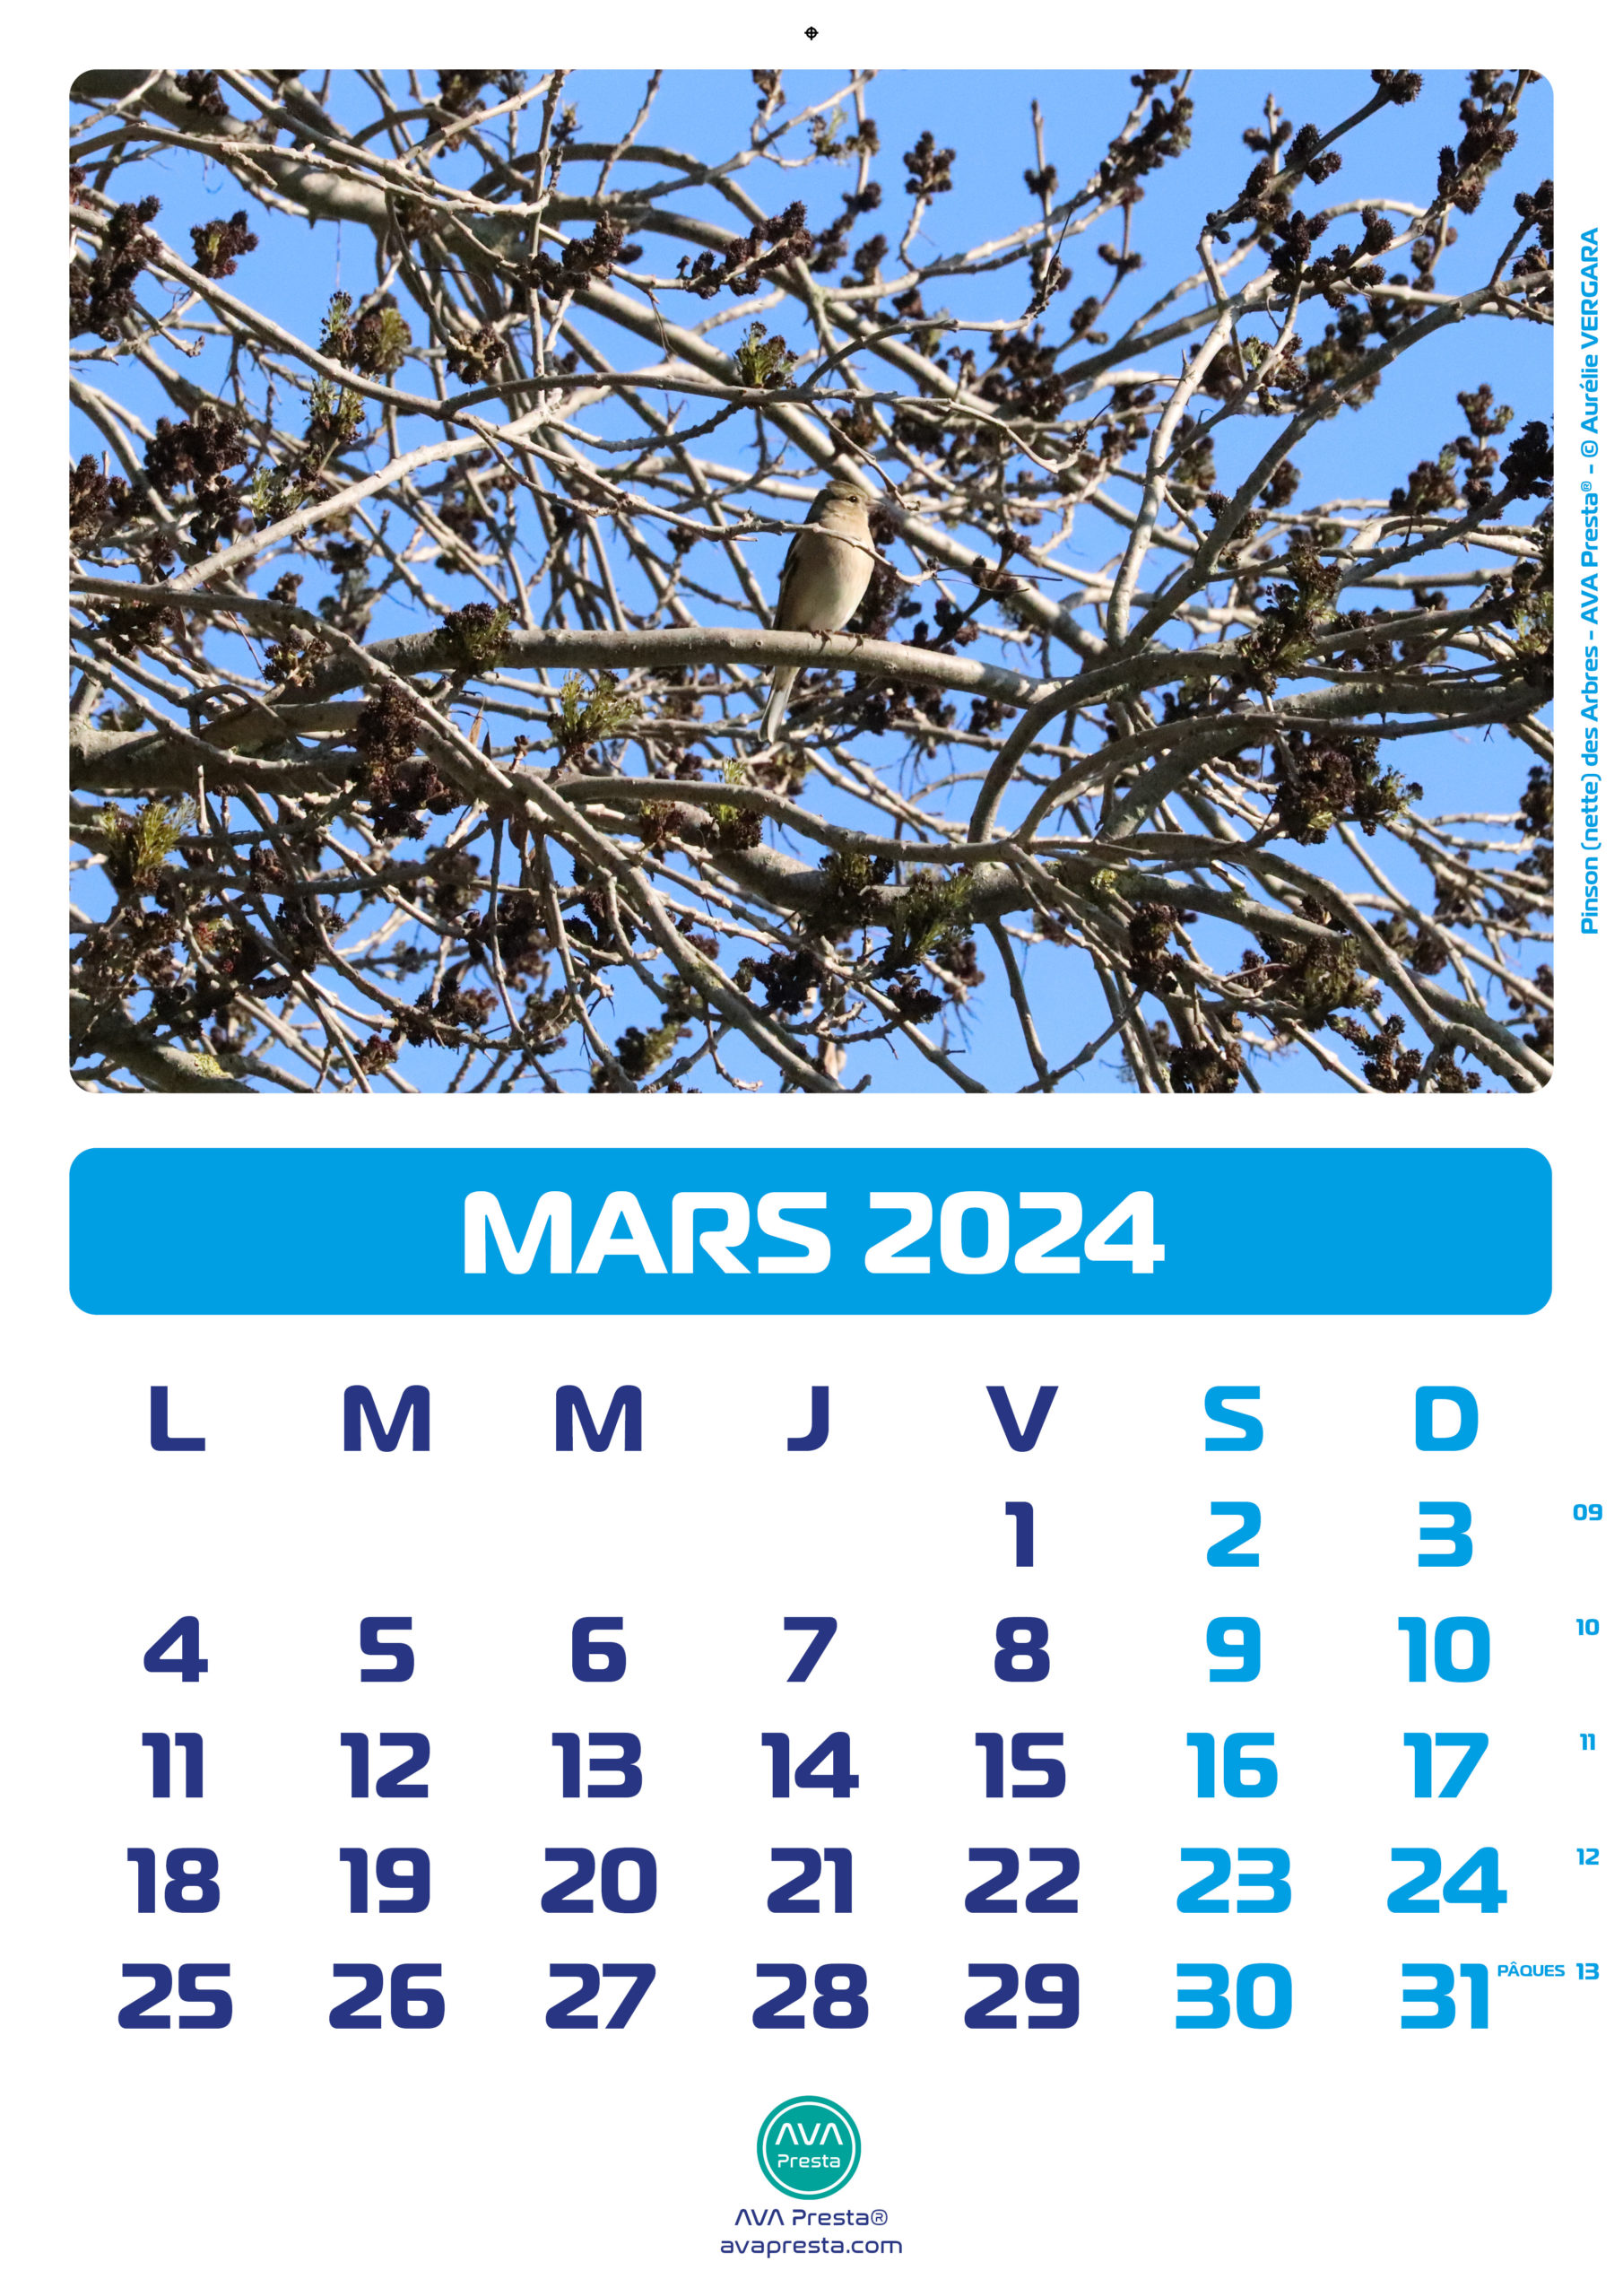 AVA Presta - Calendrier Calend'Art 2023 - Mars